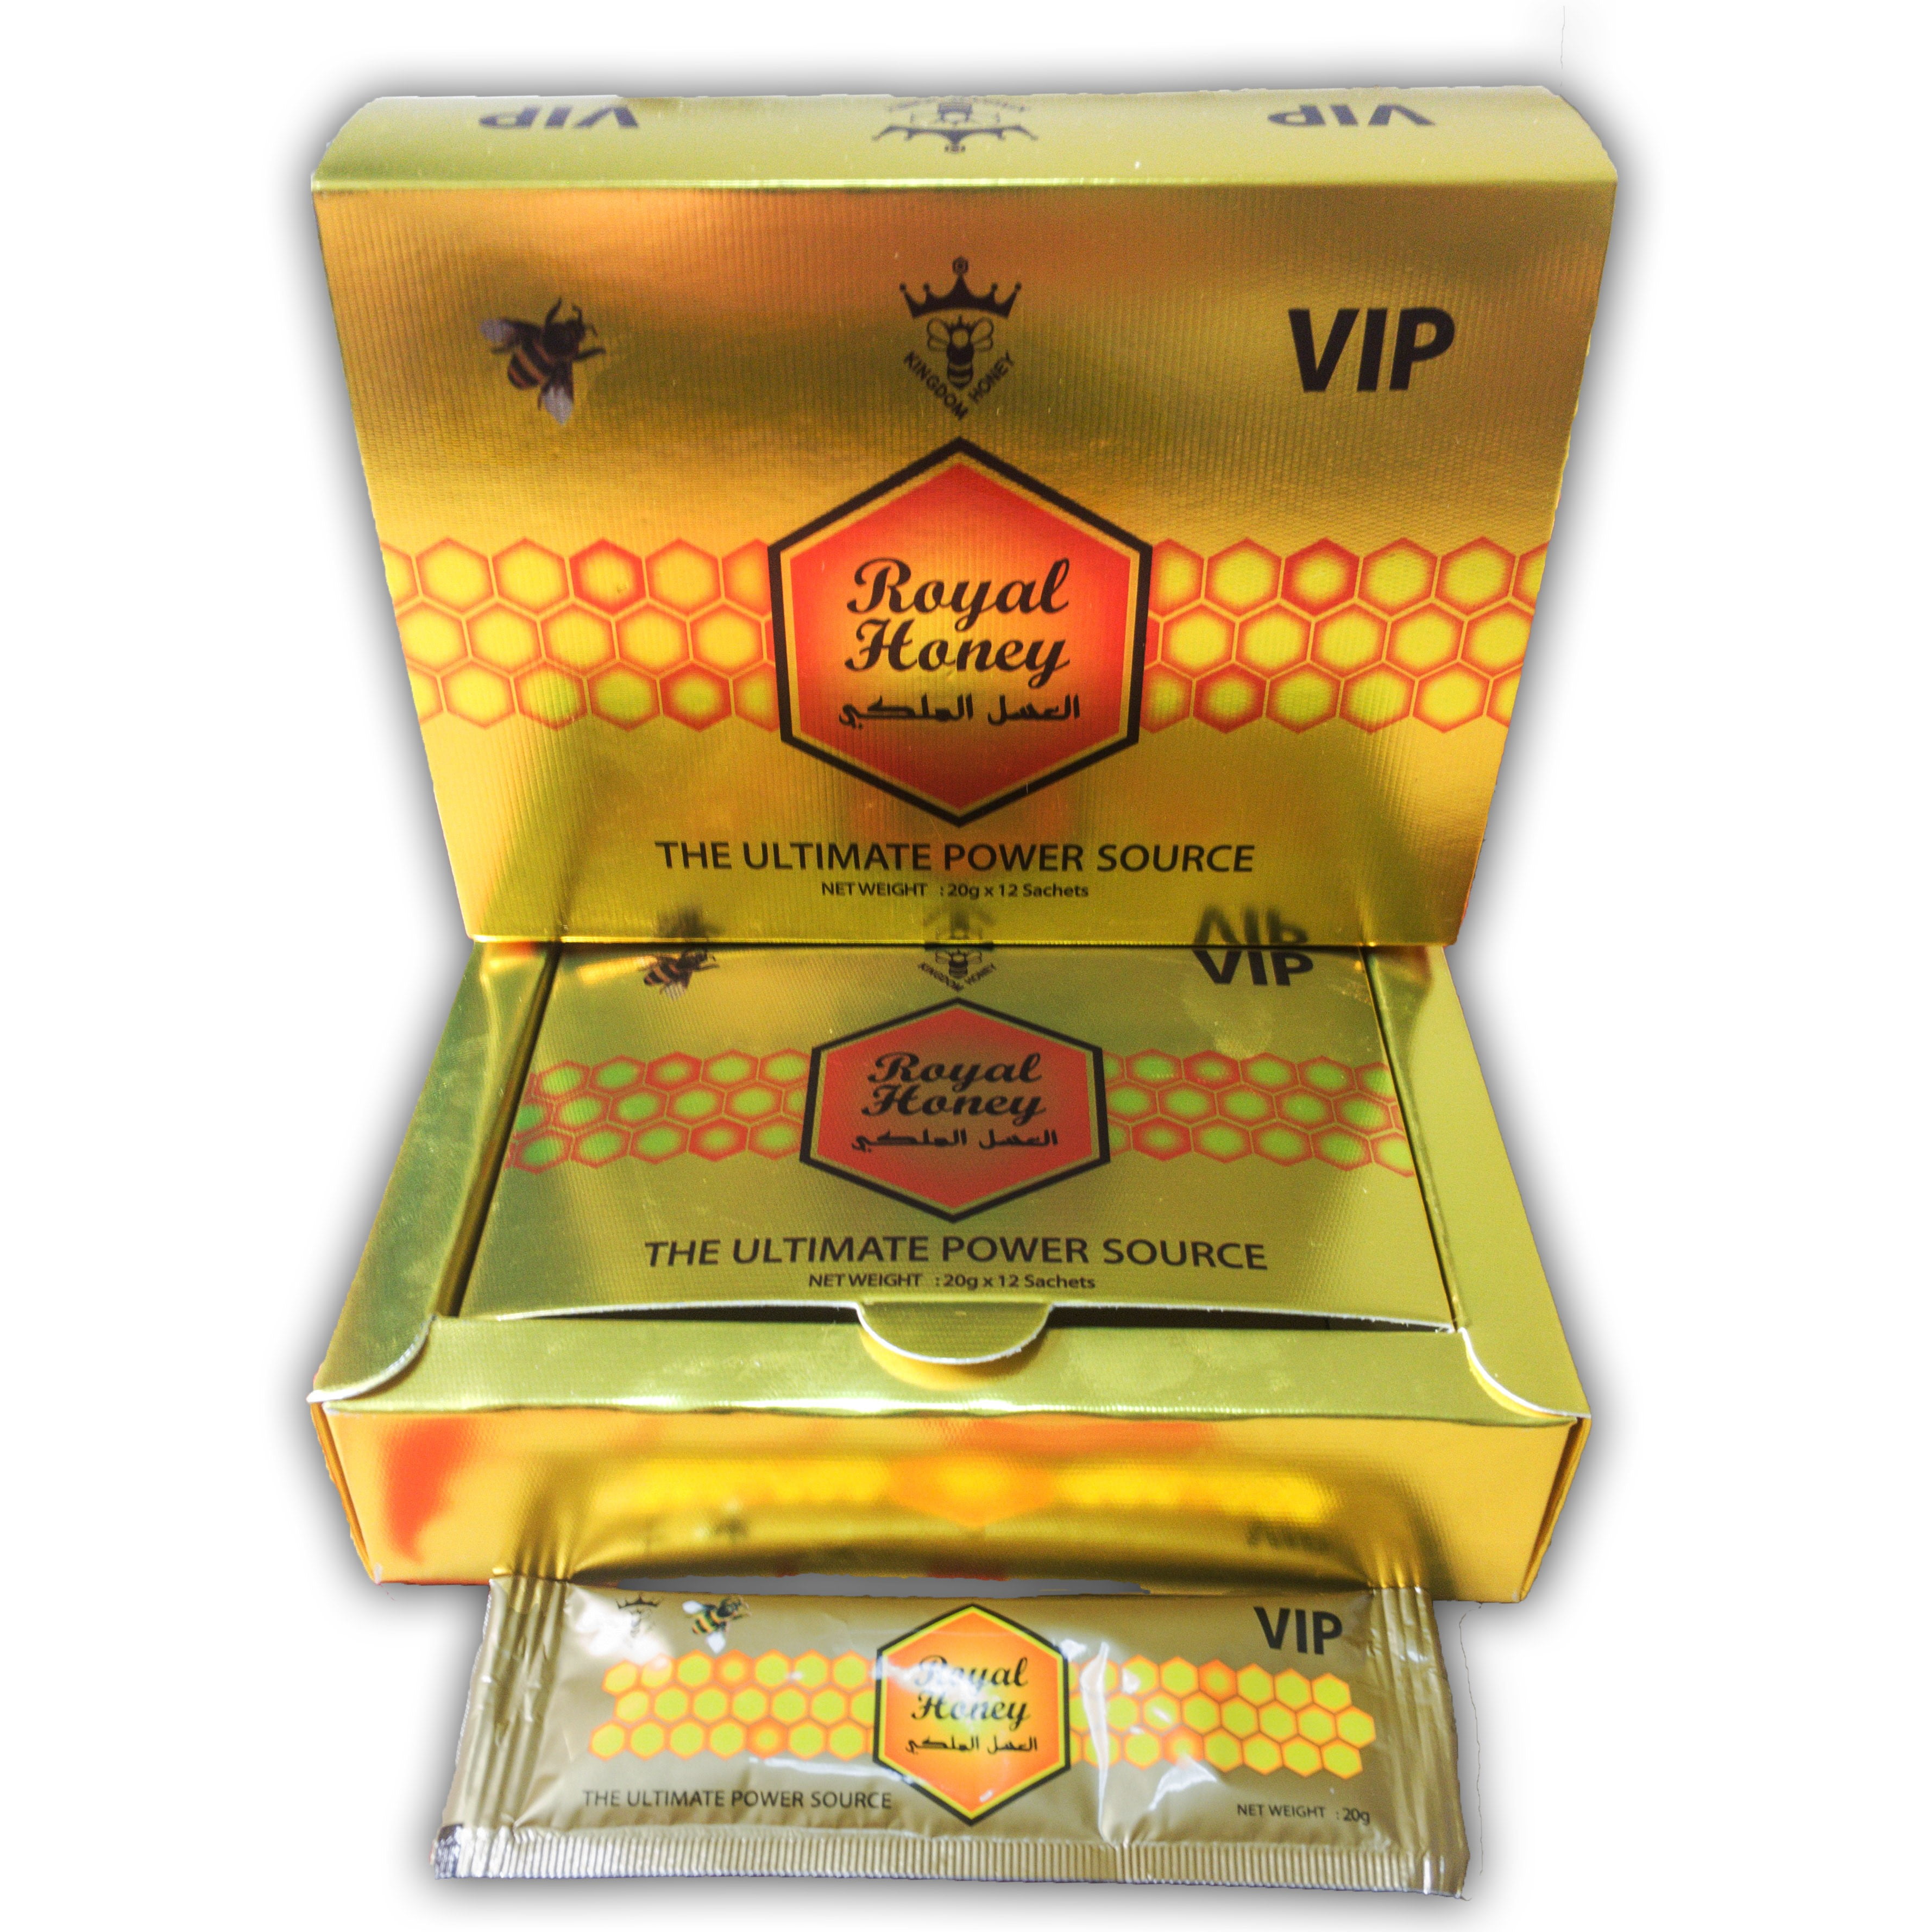 VIP Royal Honey 20g 12pk RZ Smoke Vape & Smoke Shop Wholesale